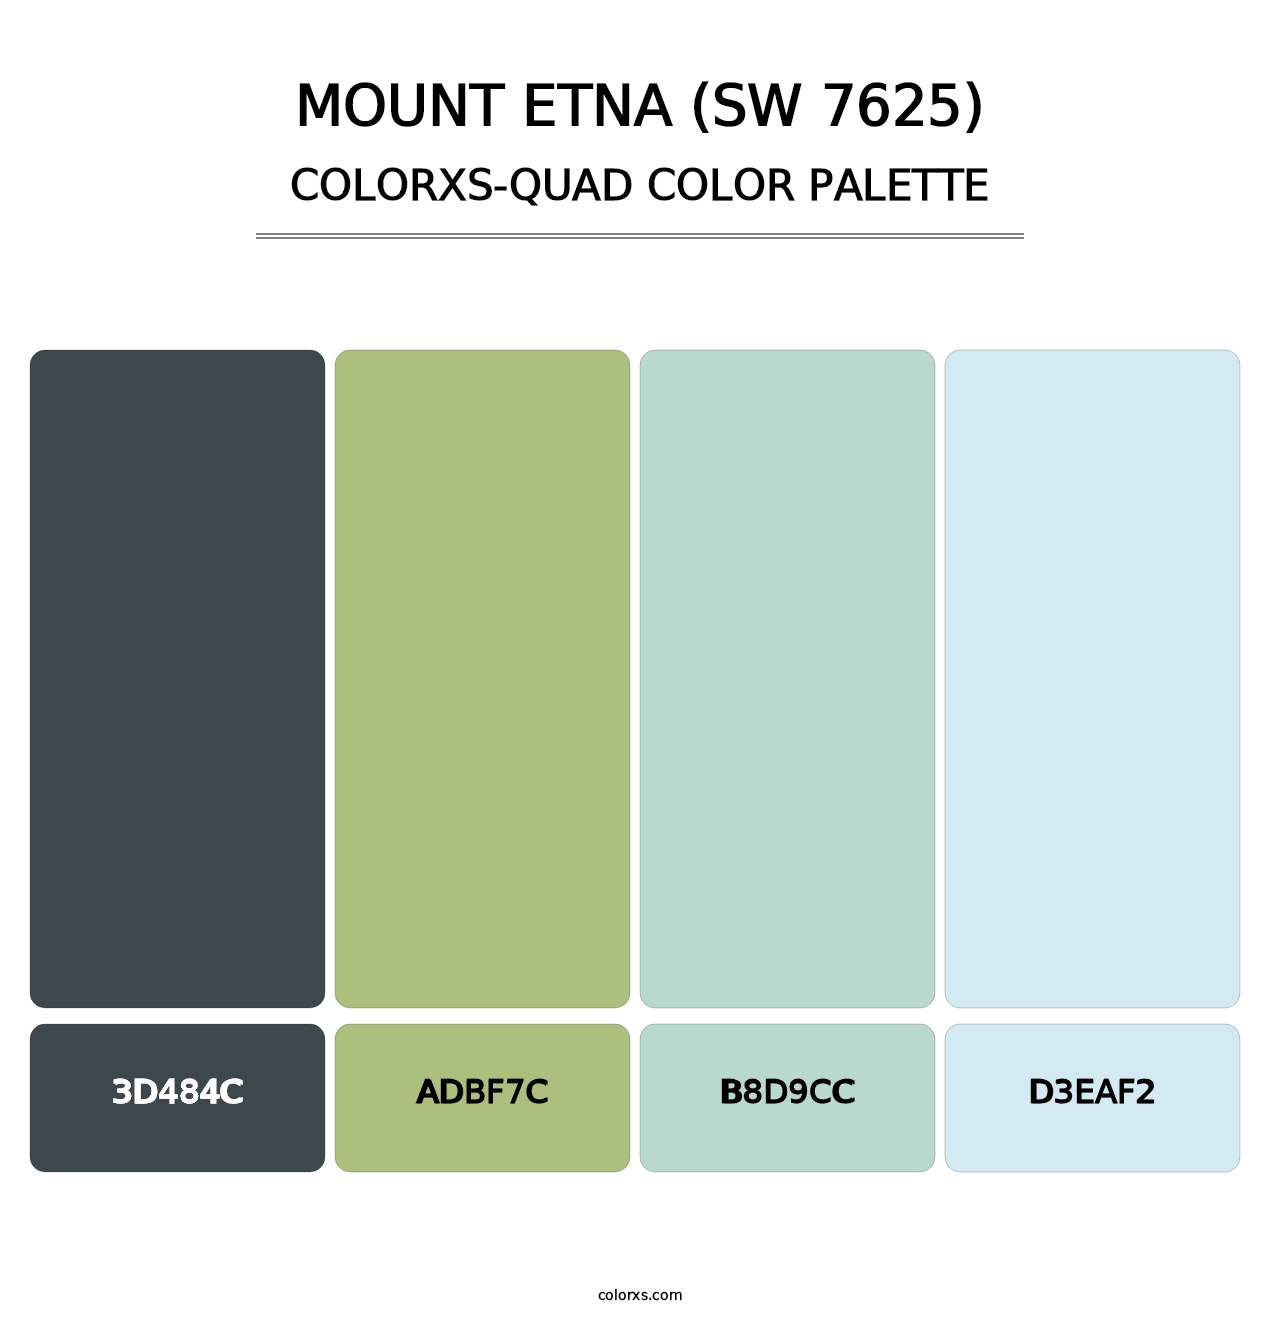 Mount Etna (SW 7625) - Colorxs Quad Palette